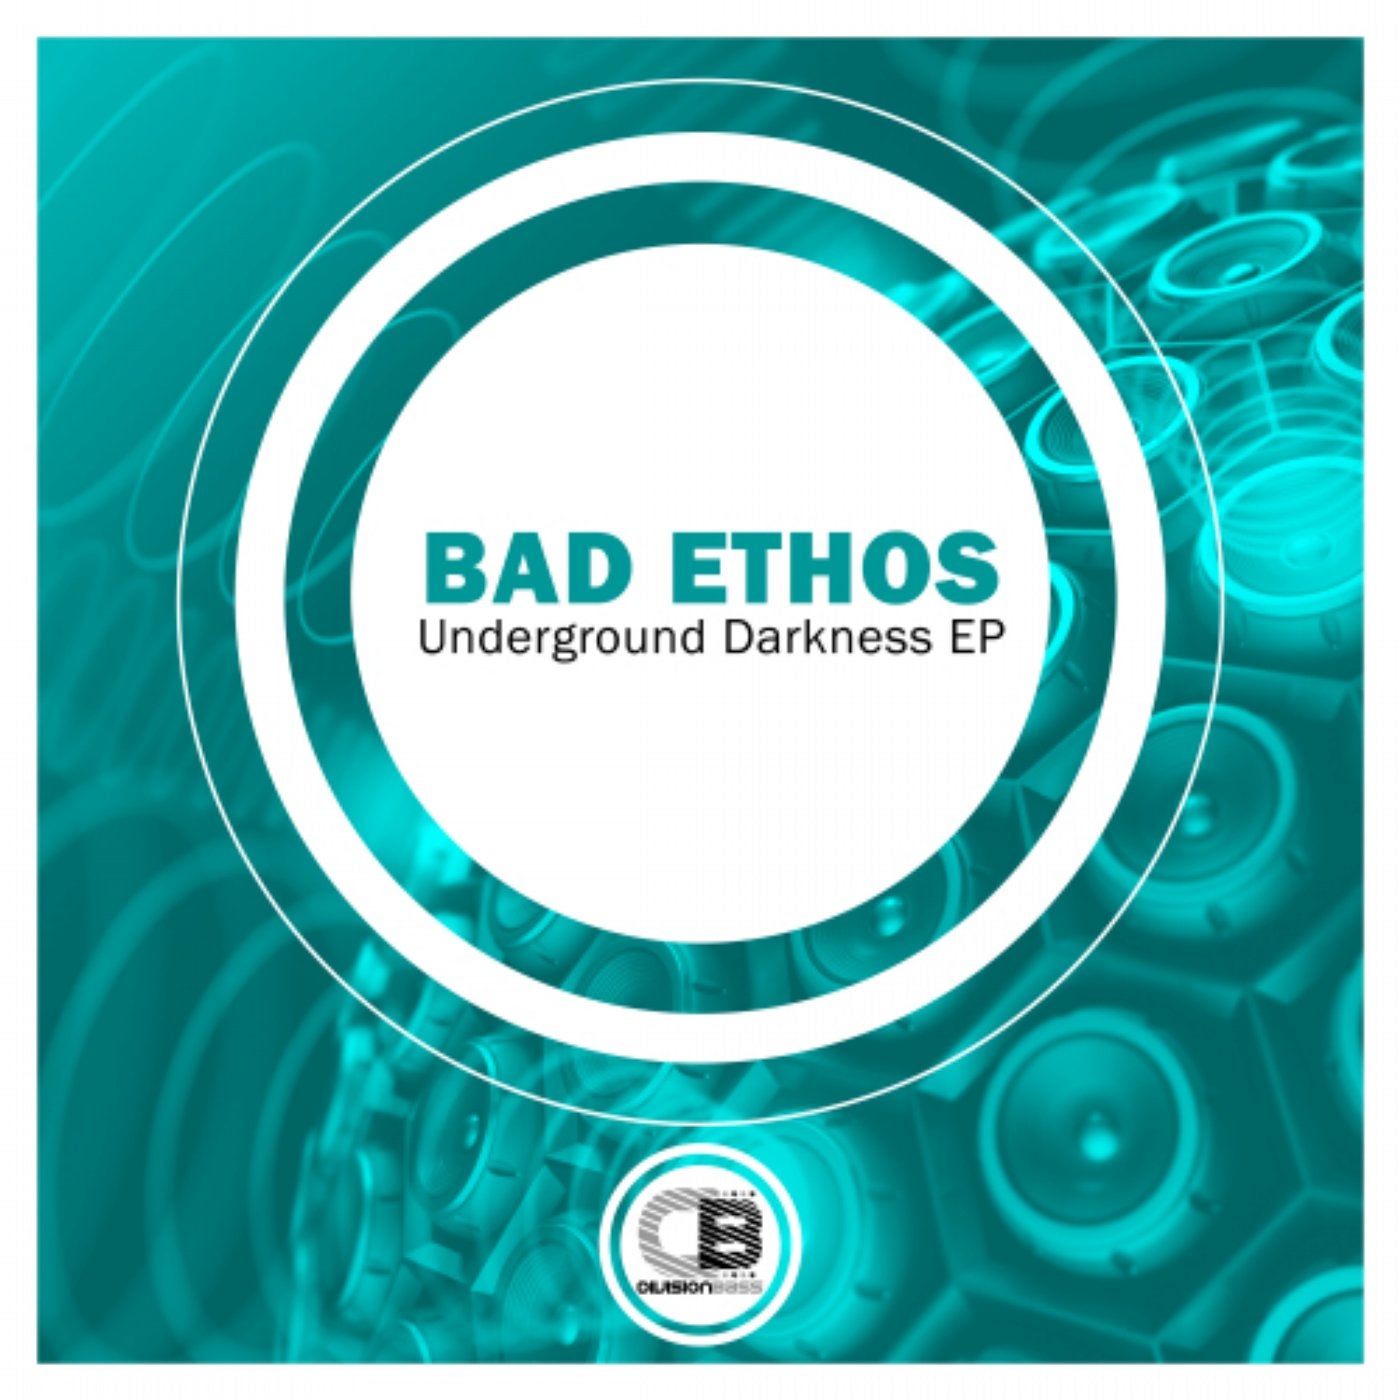 Underground Darkness EP